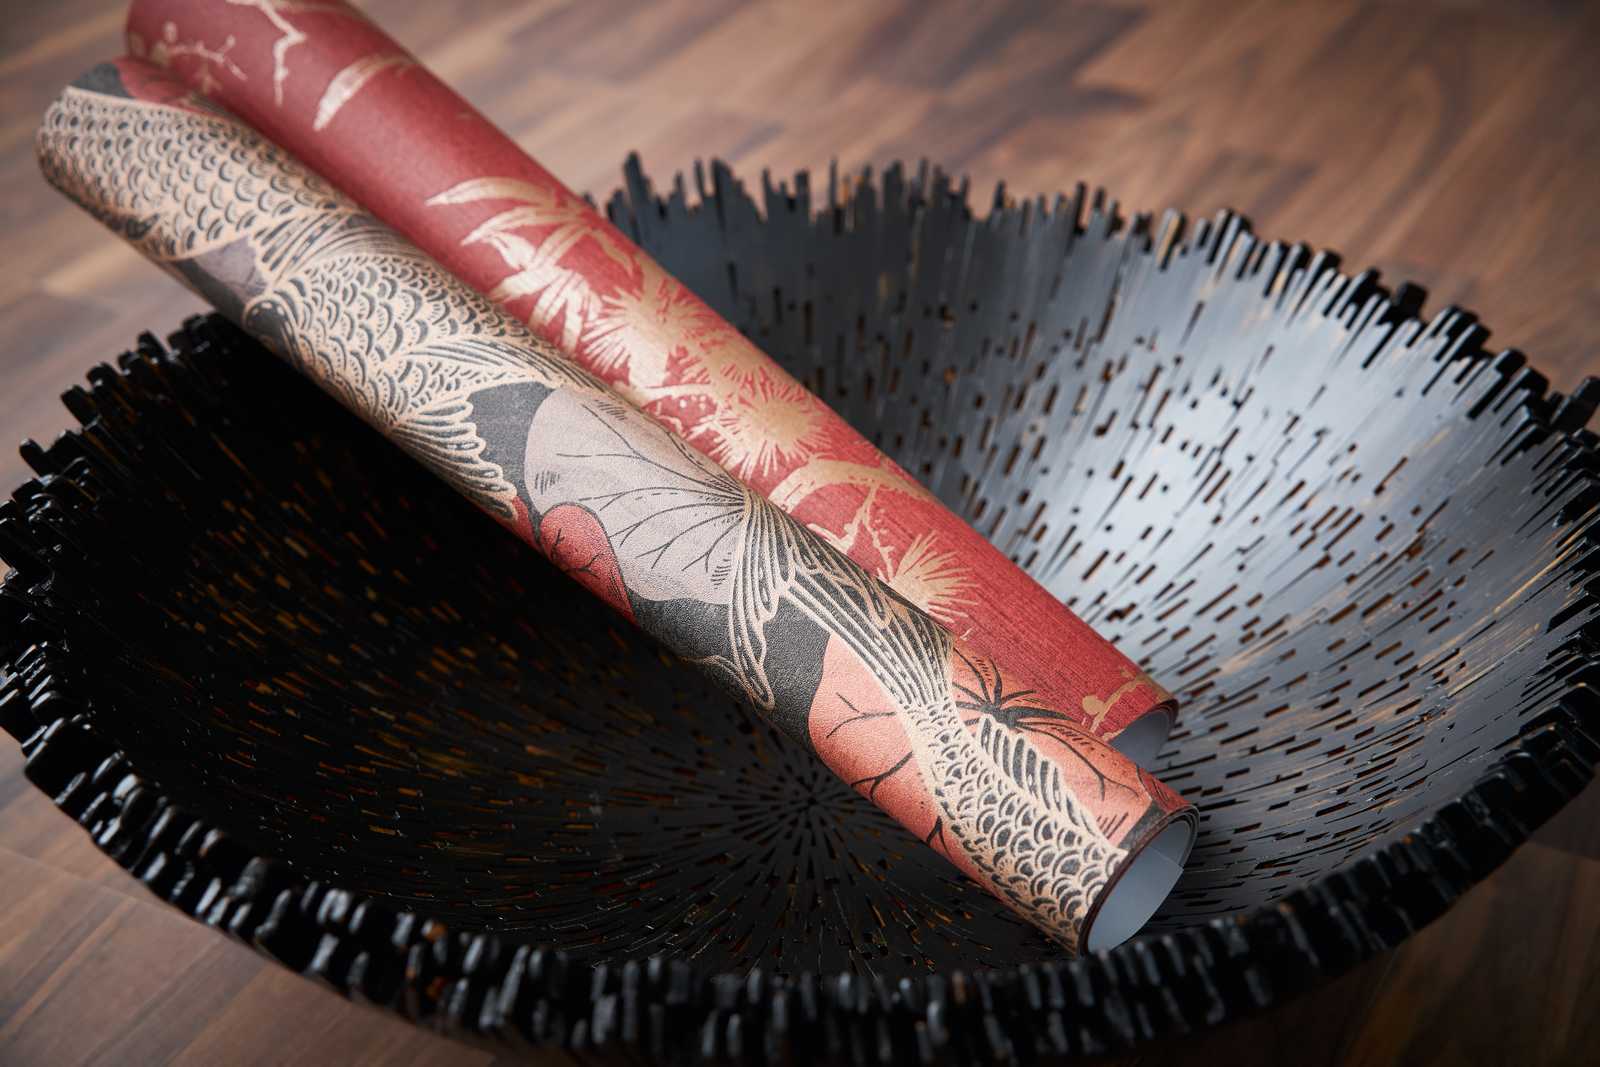             Papel pintado motivo koi con acentos metálicos - marrón, rojo, negro
        